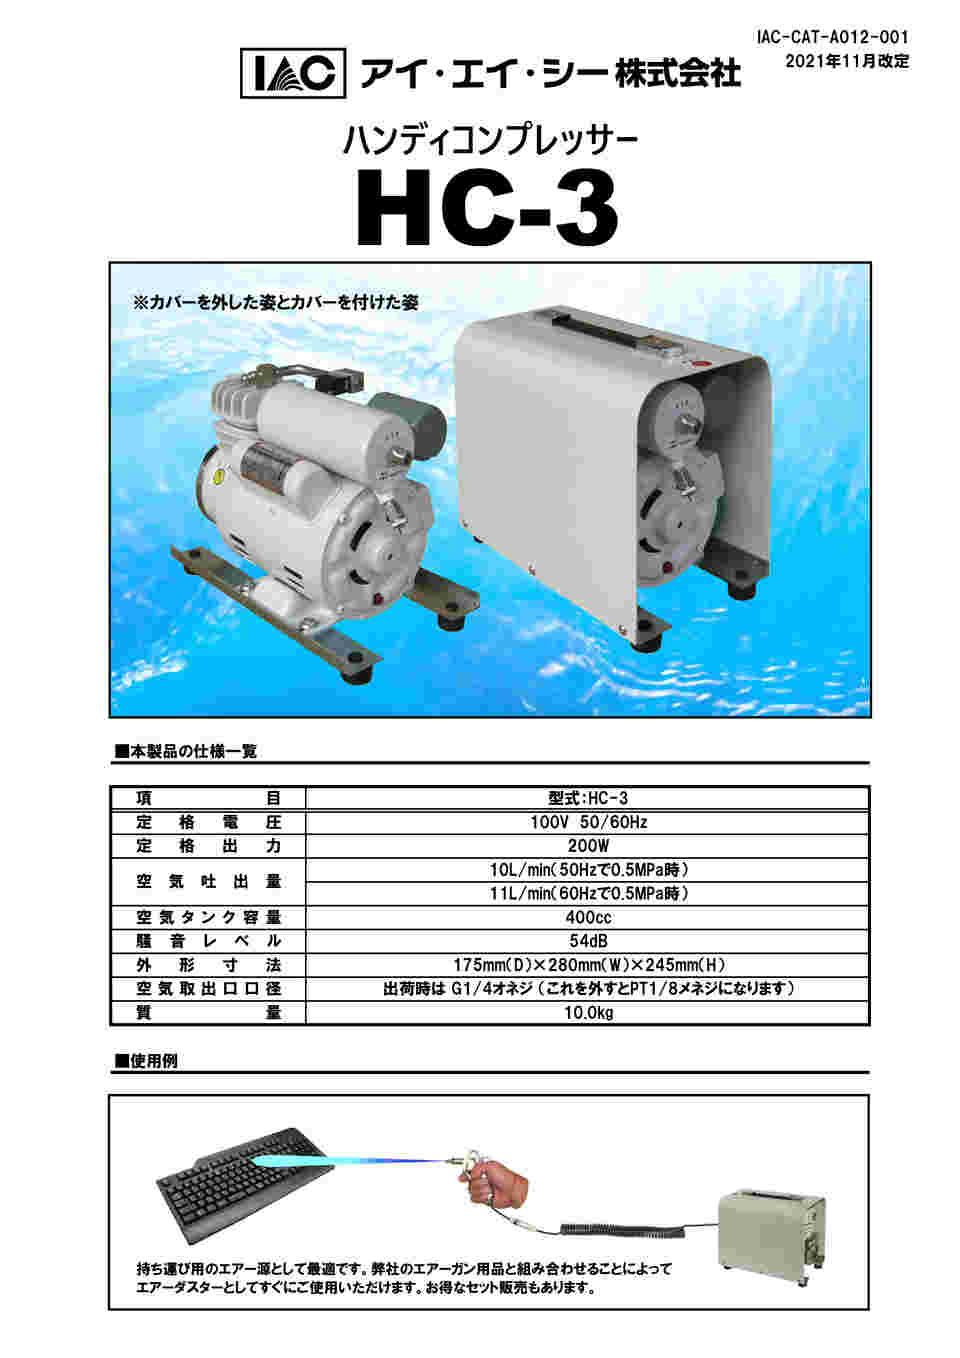 62-0955-55 ハンディオイルレスコンプレッサー 400CC HC-3 【AXEL 